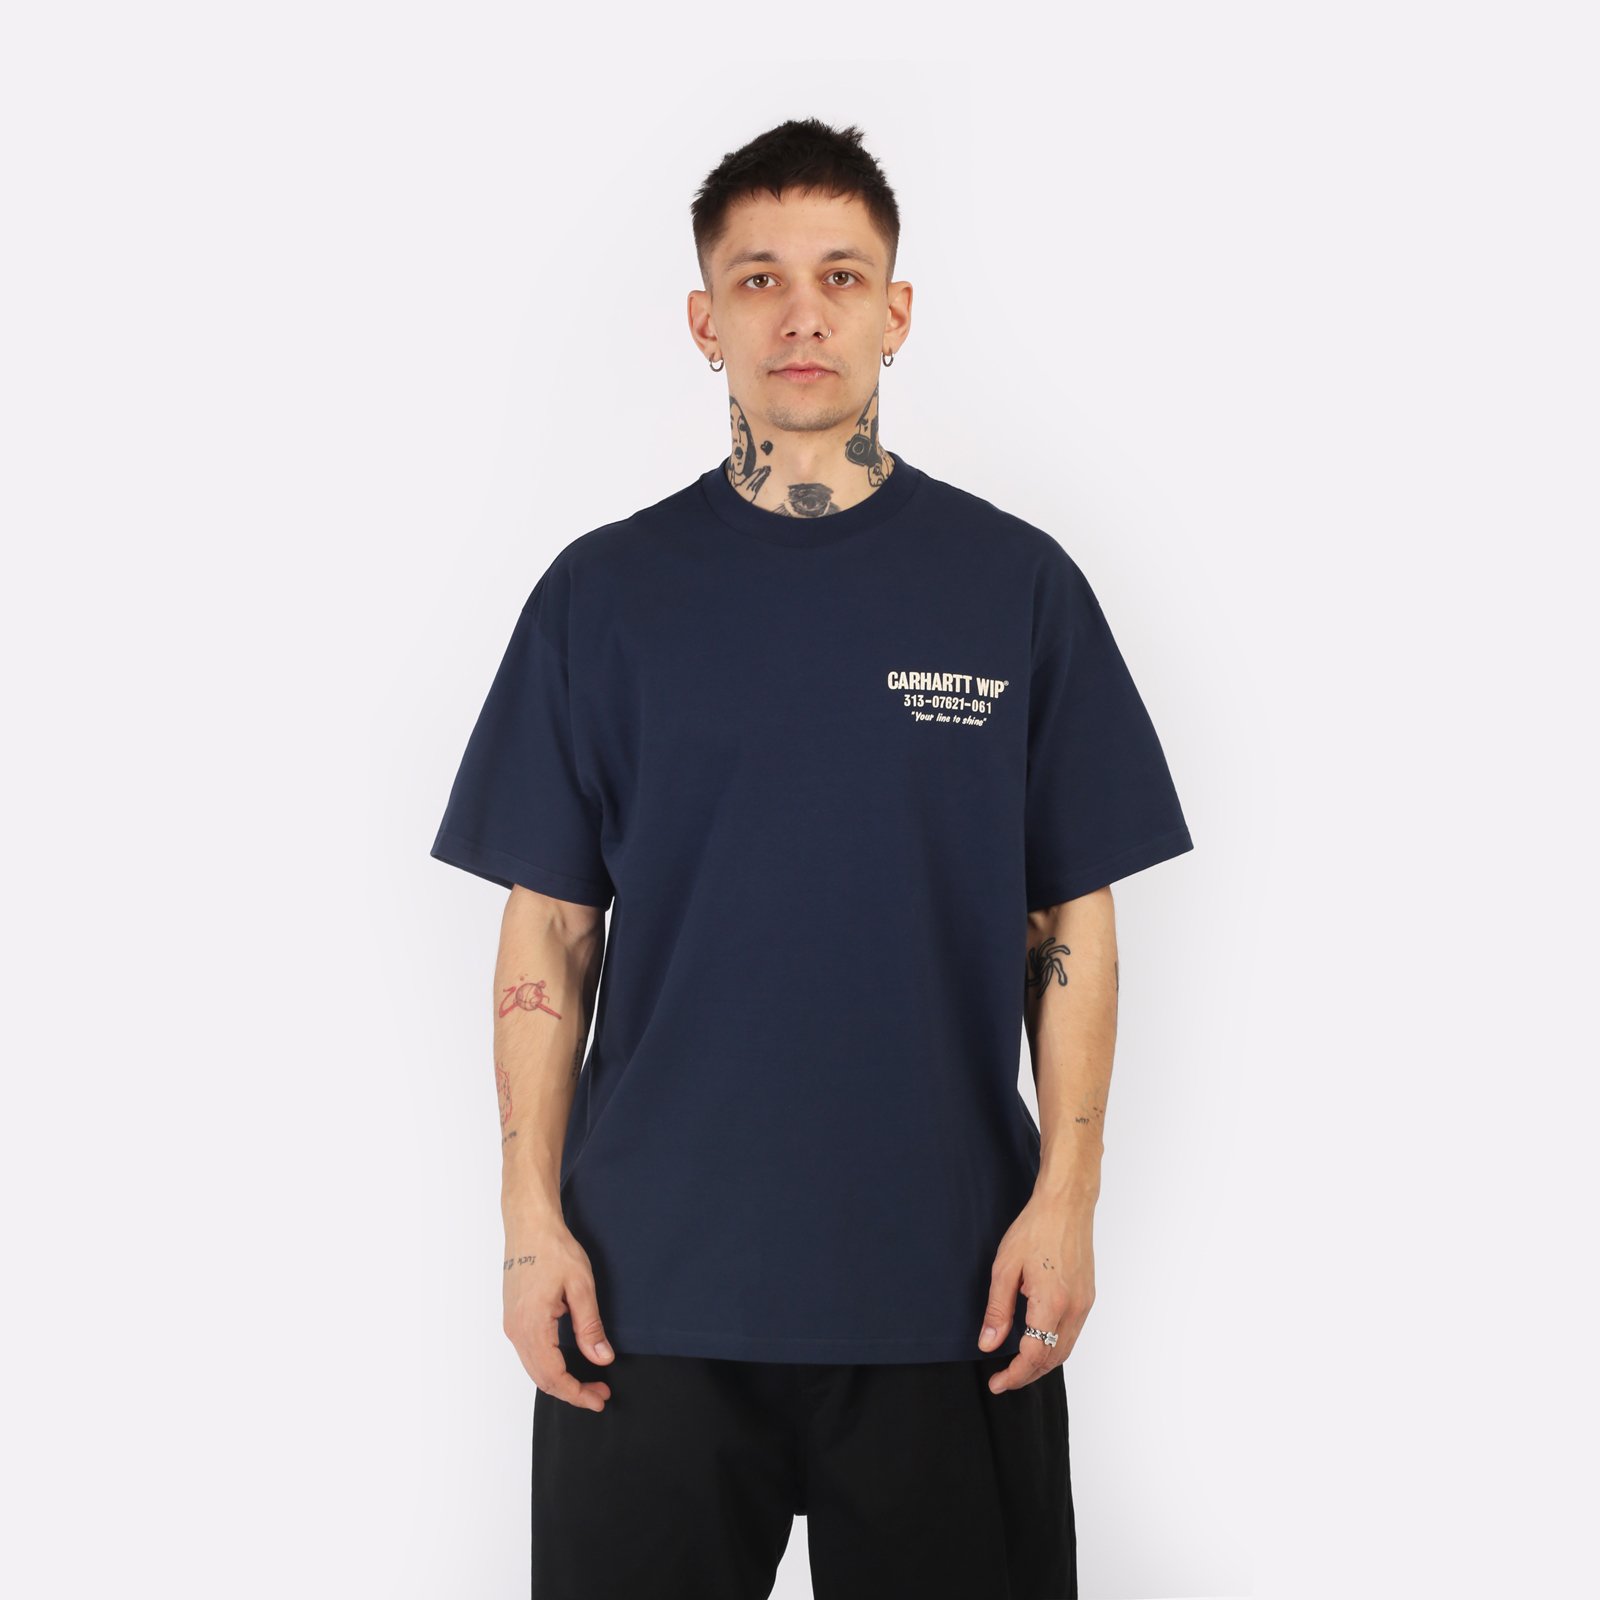 мужская футболка Carhartt WIP S/S Less Troubles T-Shirt  (I033187-blue/wax)  - цена, описание, фото 1